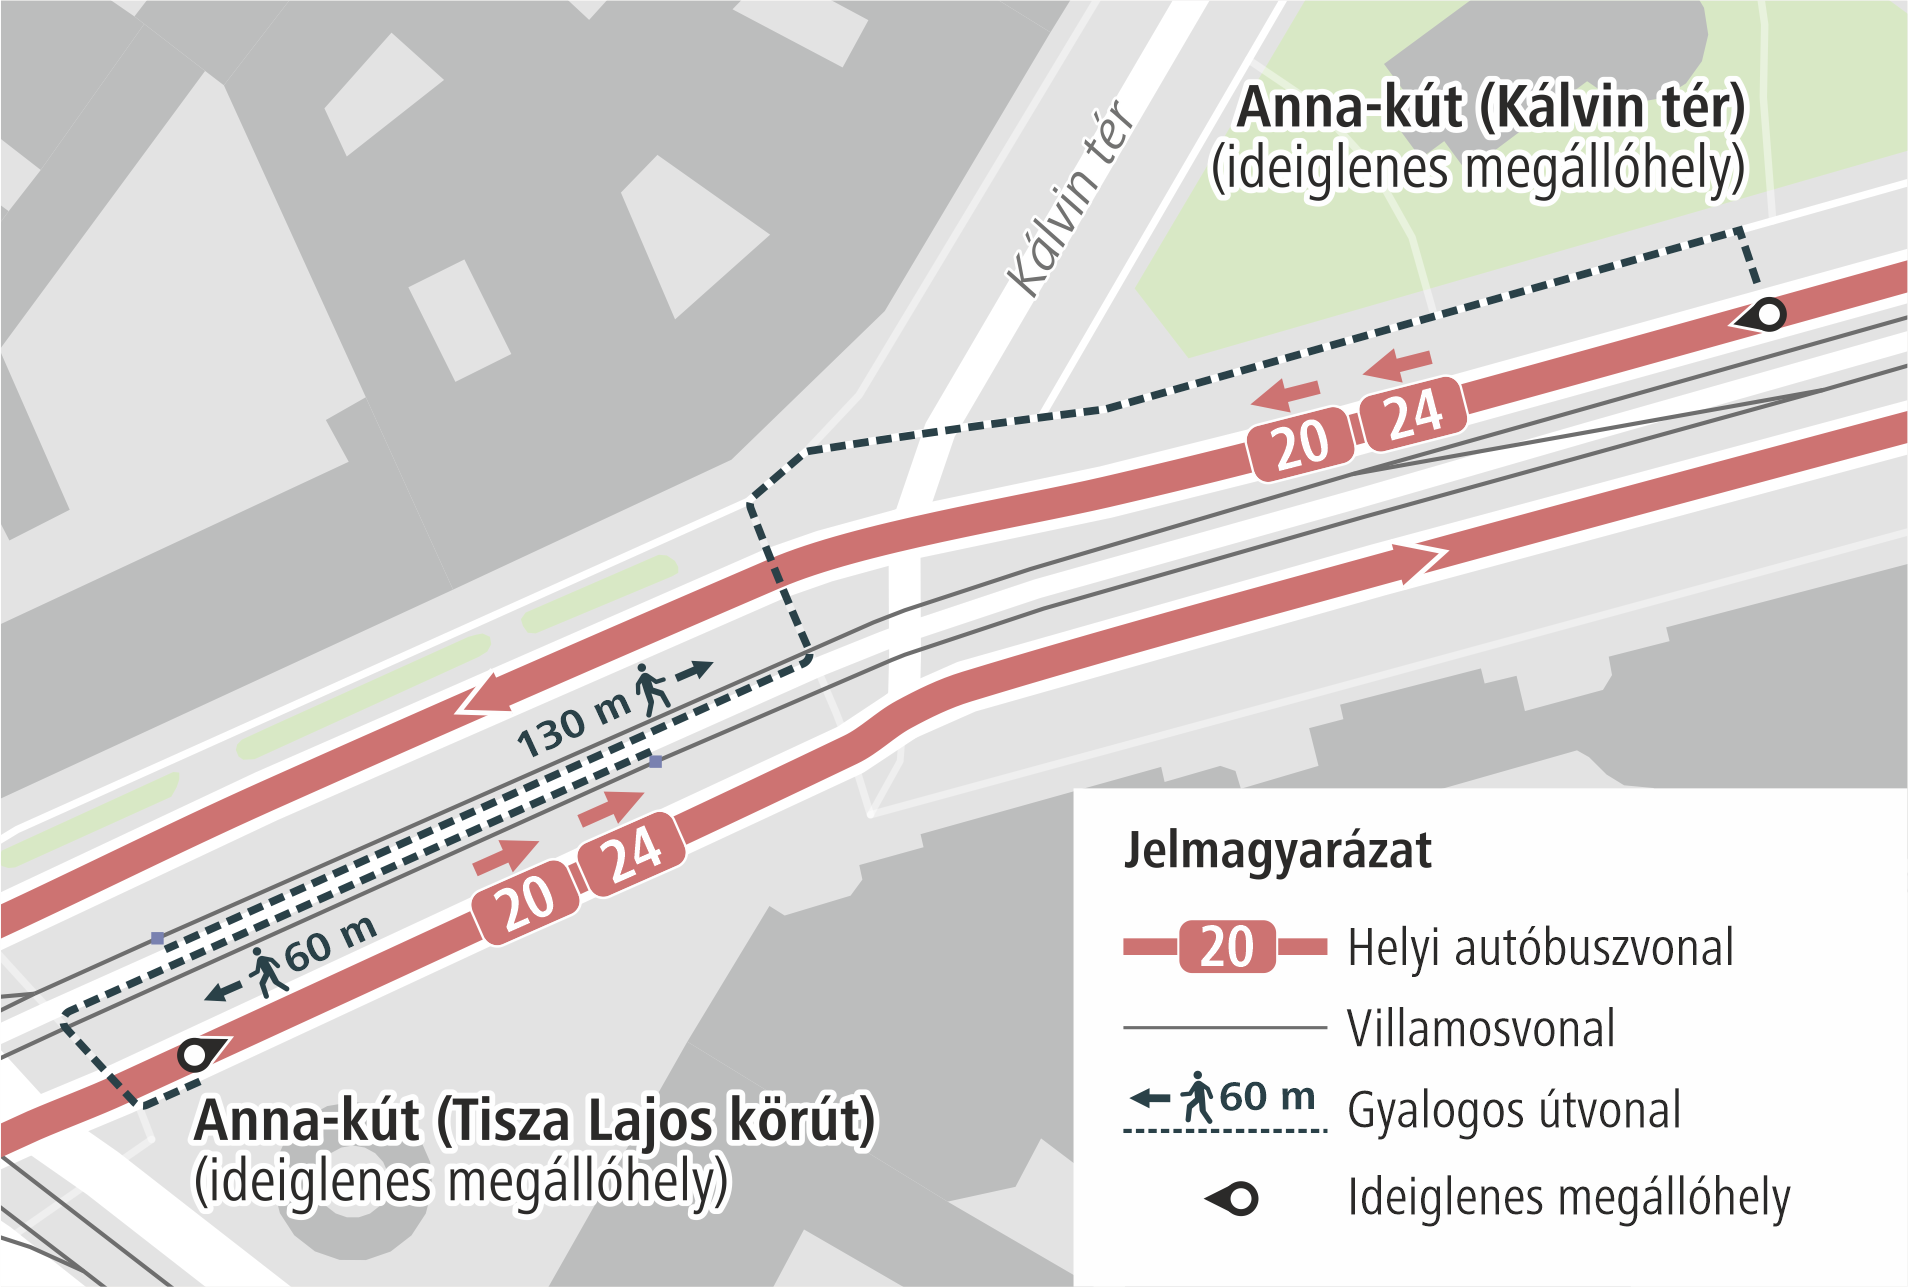 Vágányzár miatt Szegeden az Anna-kút (Tisza Lajos körút) megállóhelyet ideiglenesen áthelyezik.